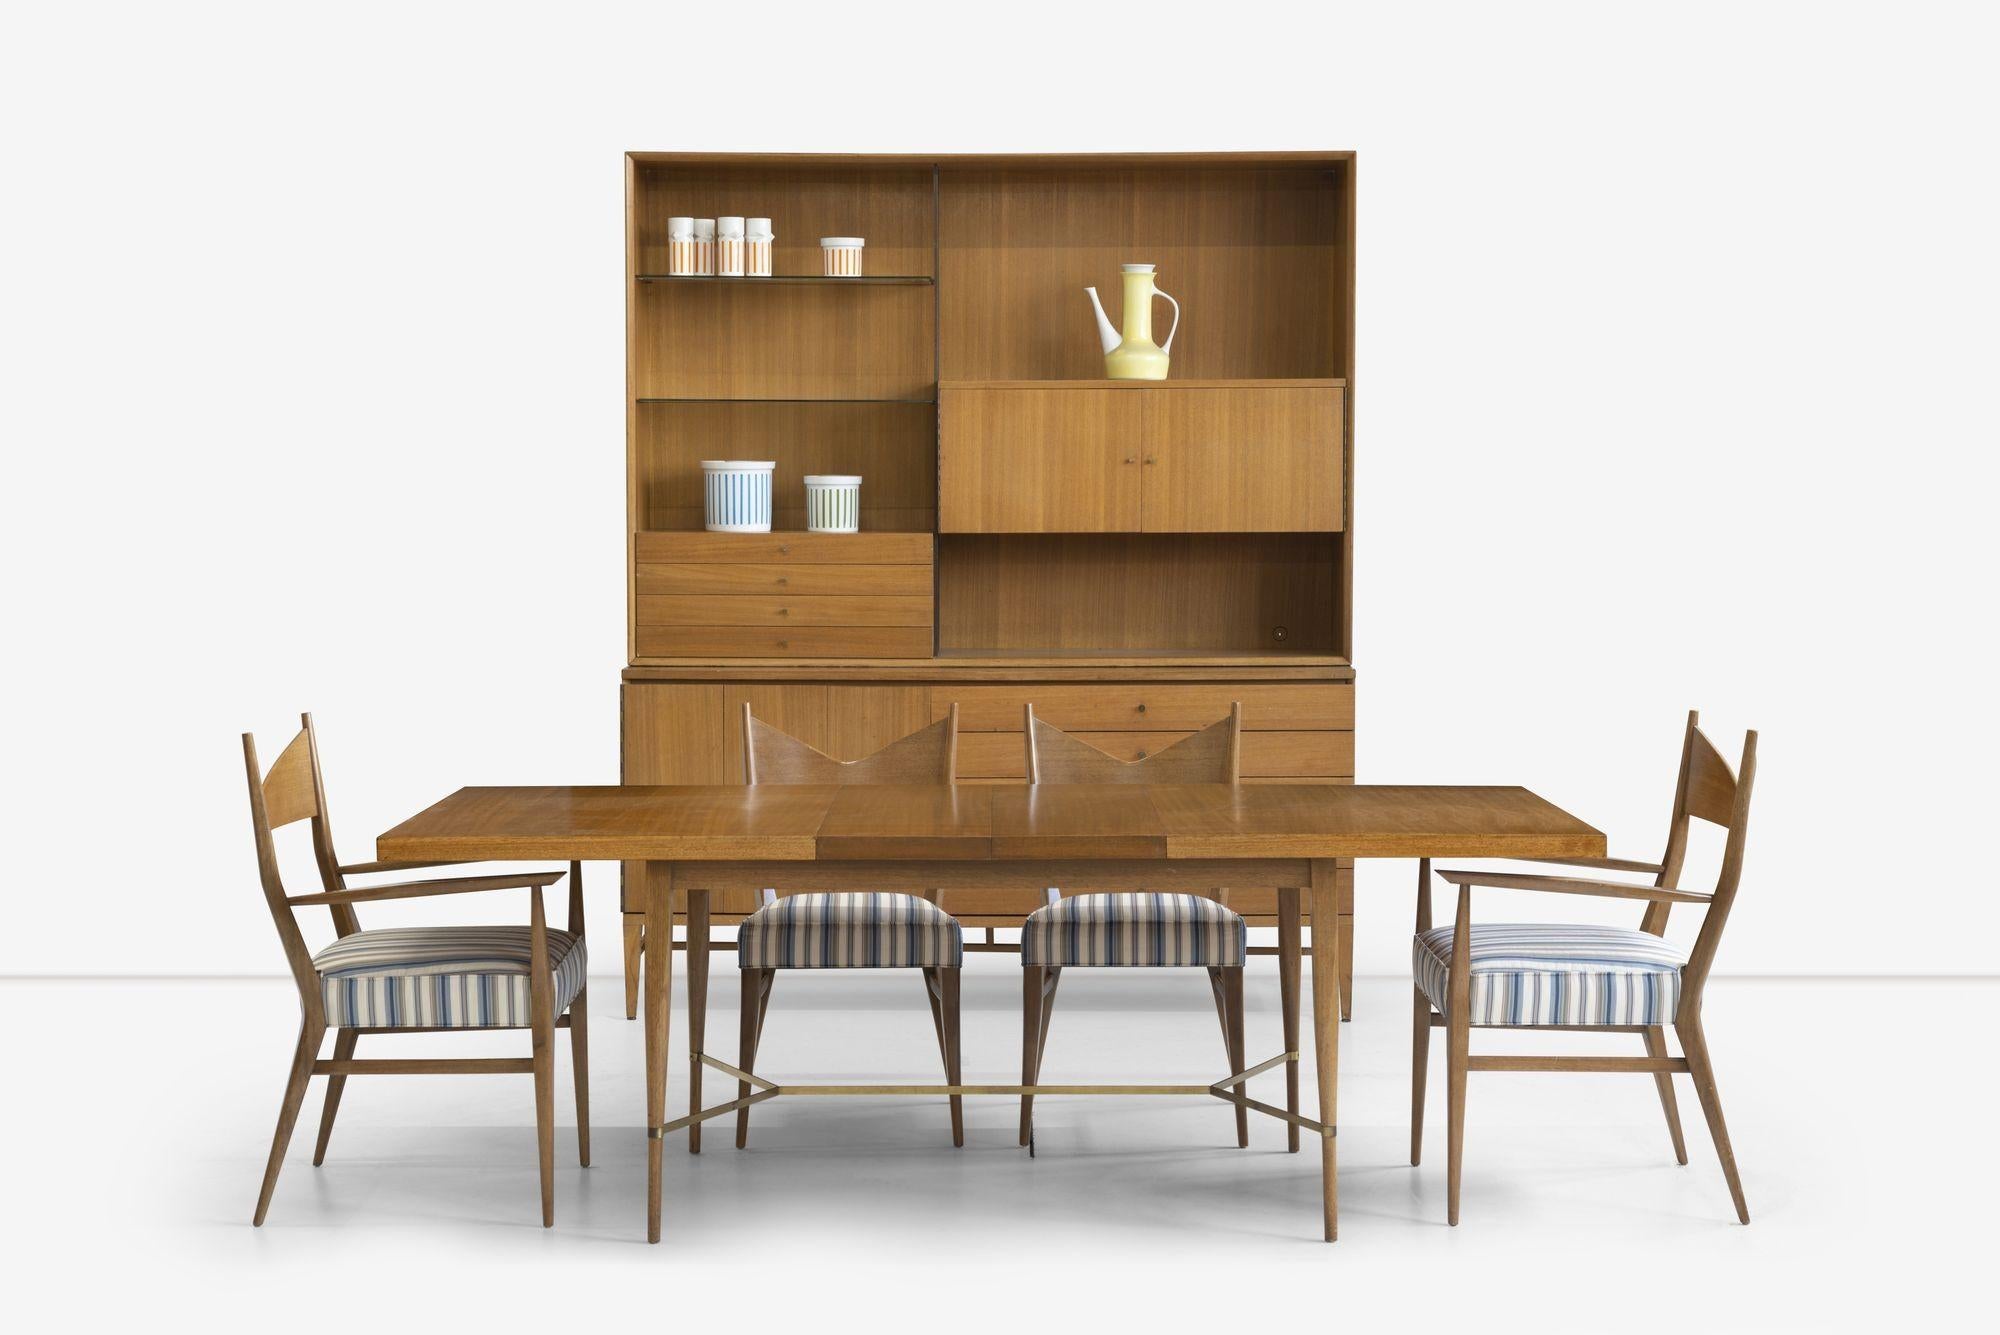 Paul McCobb Room Divider für Calvin Furniture Company, mit Mahagoni, massivem Messing und Glasböden.
Der untere Abschnitt hat fünf Schubladen mit Messingknopf zieht und geschlossen Lagerung hinter Falttüren und misst 71,50 